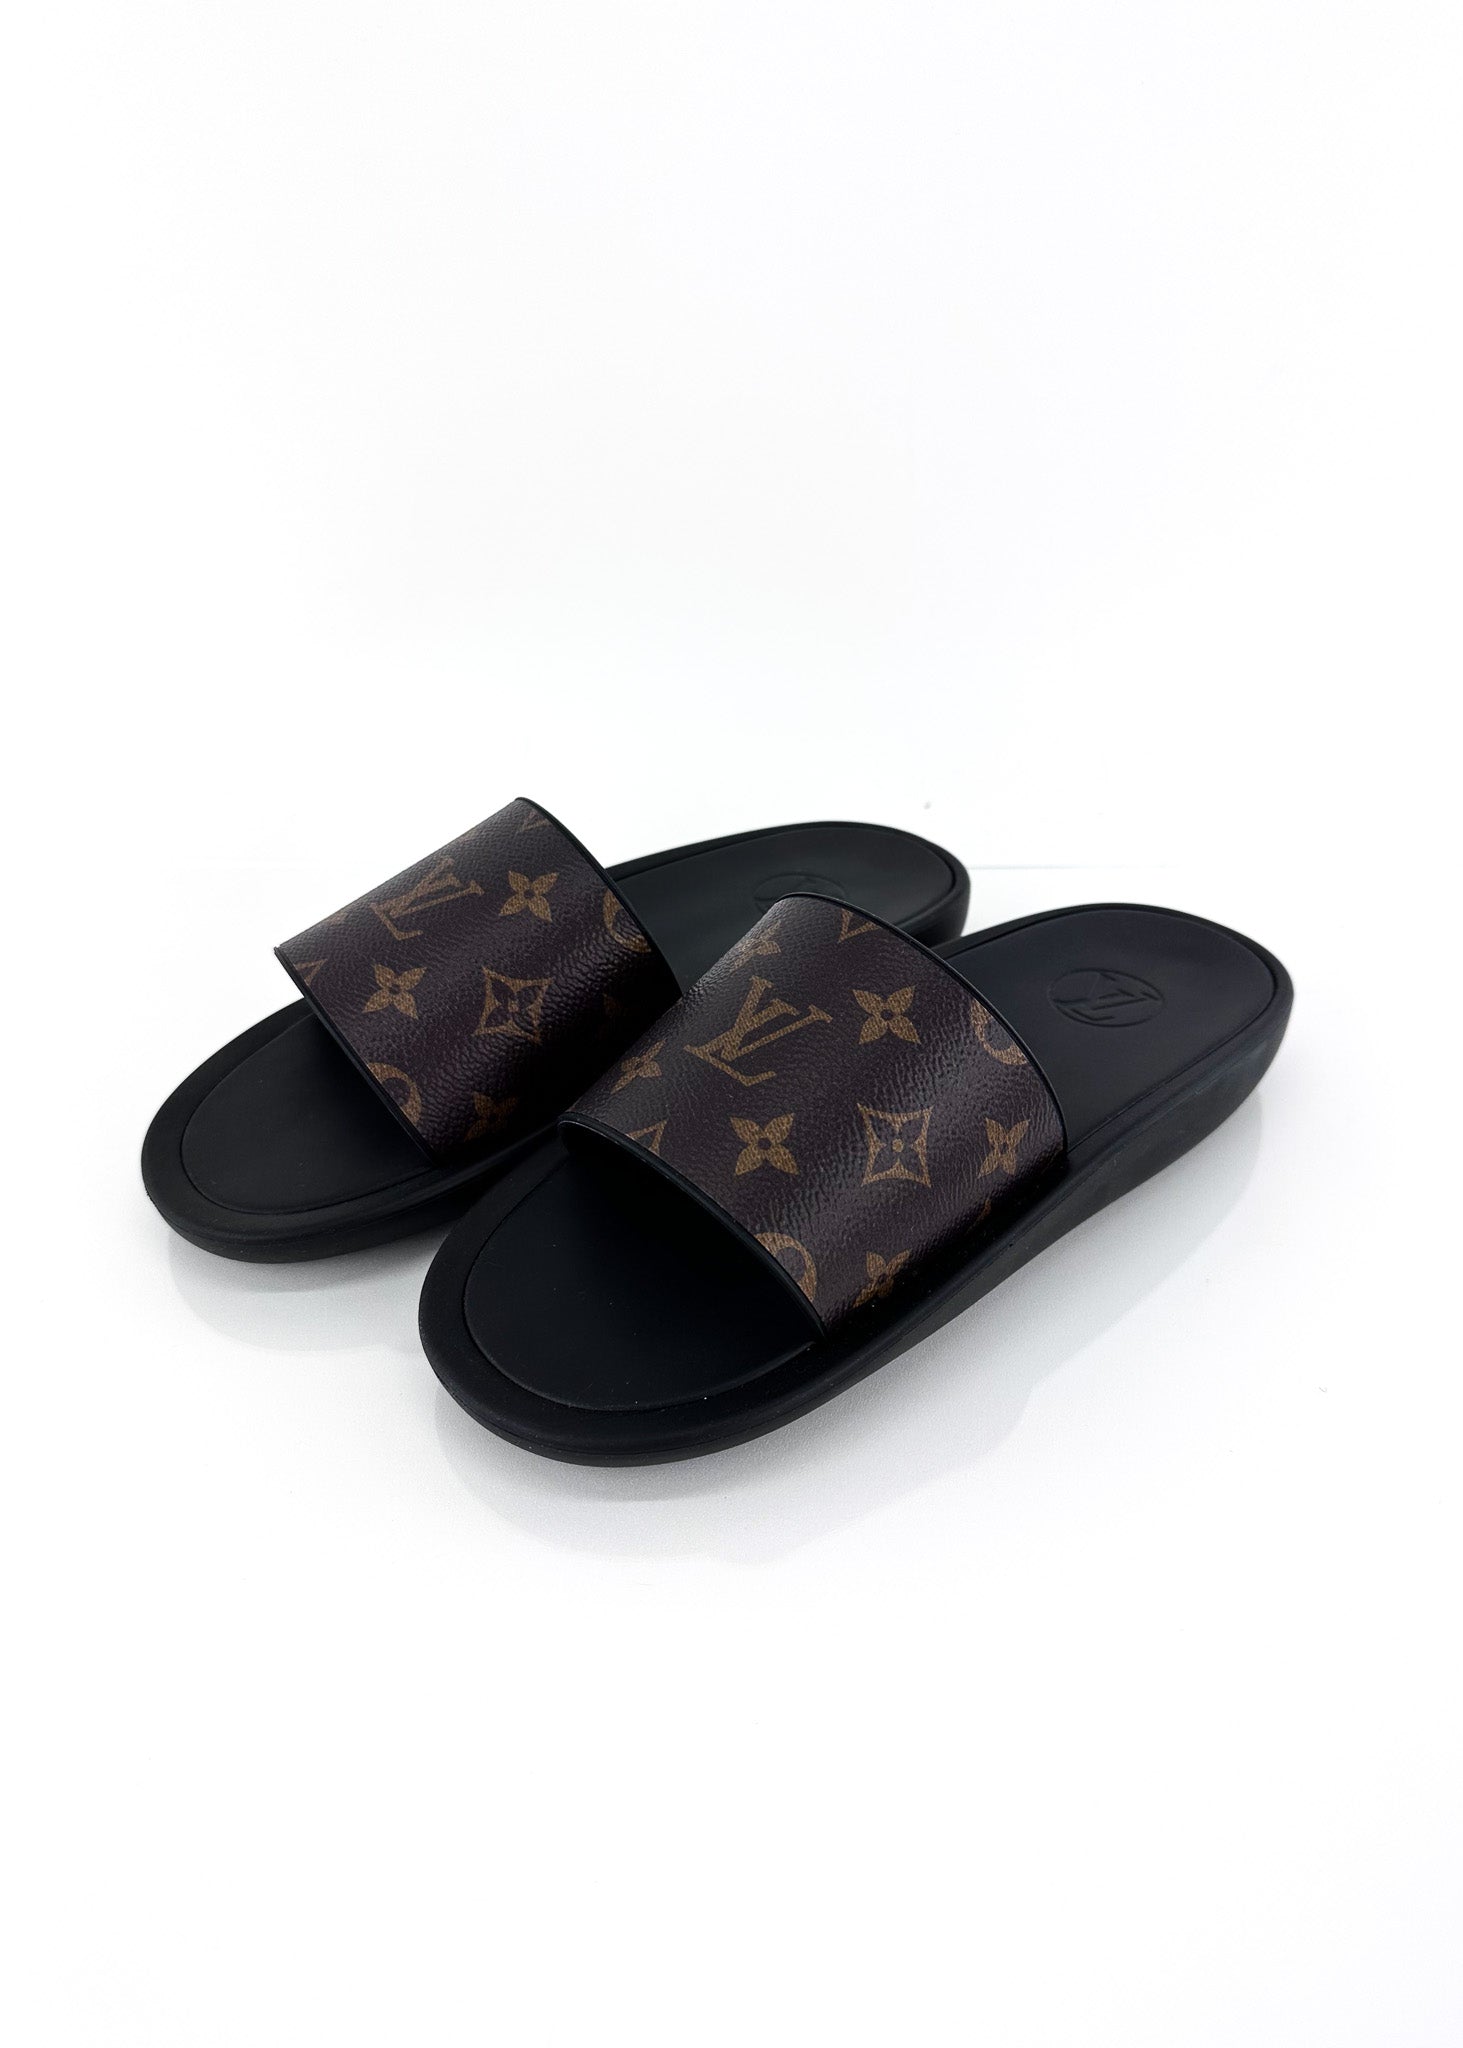 Louis Vuitton Sunbath LV Monogram Slides - Blue Sandals, Shoes - LOU723032